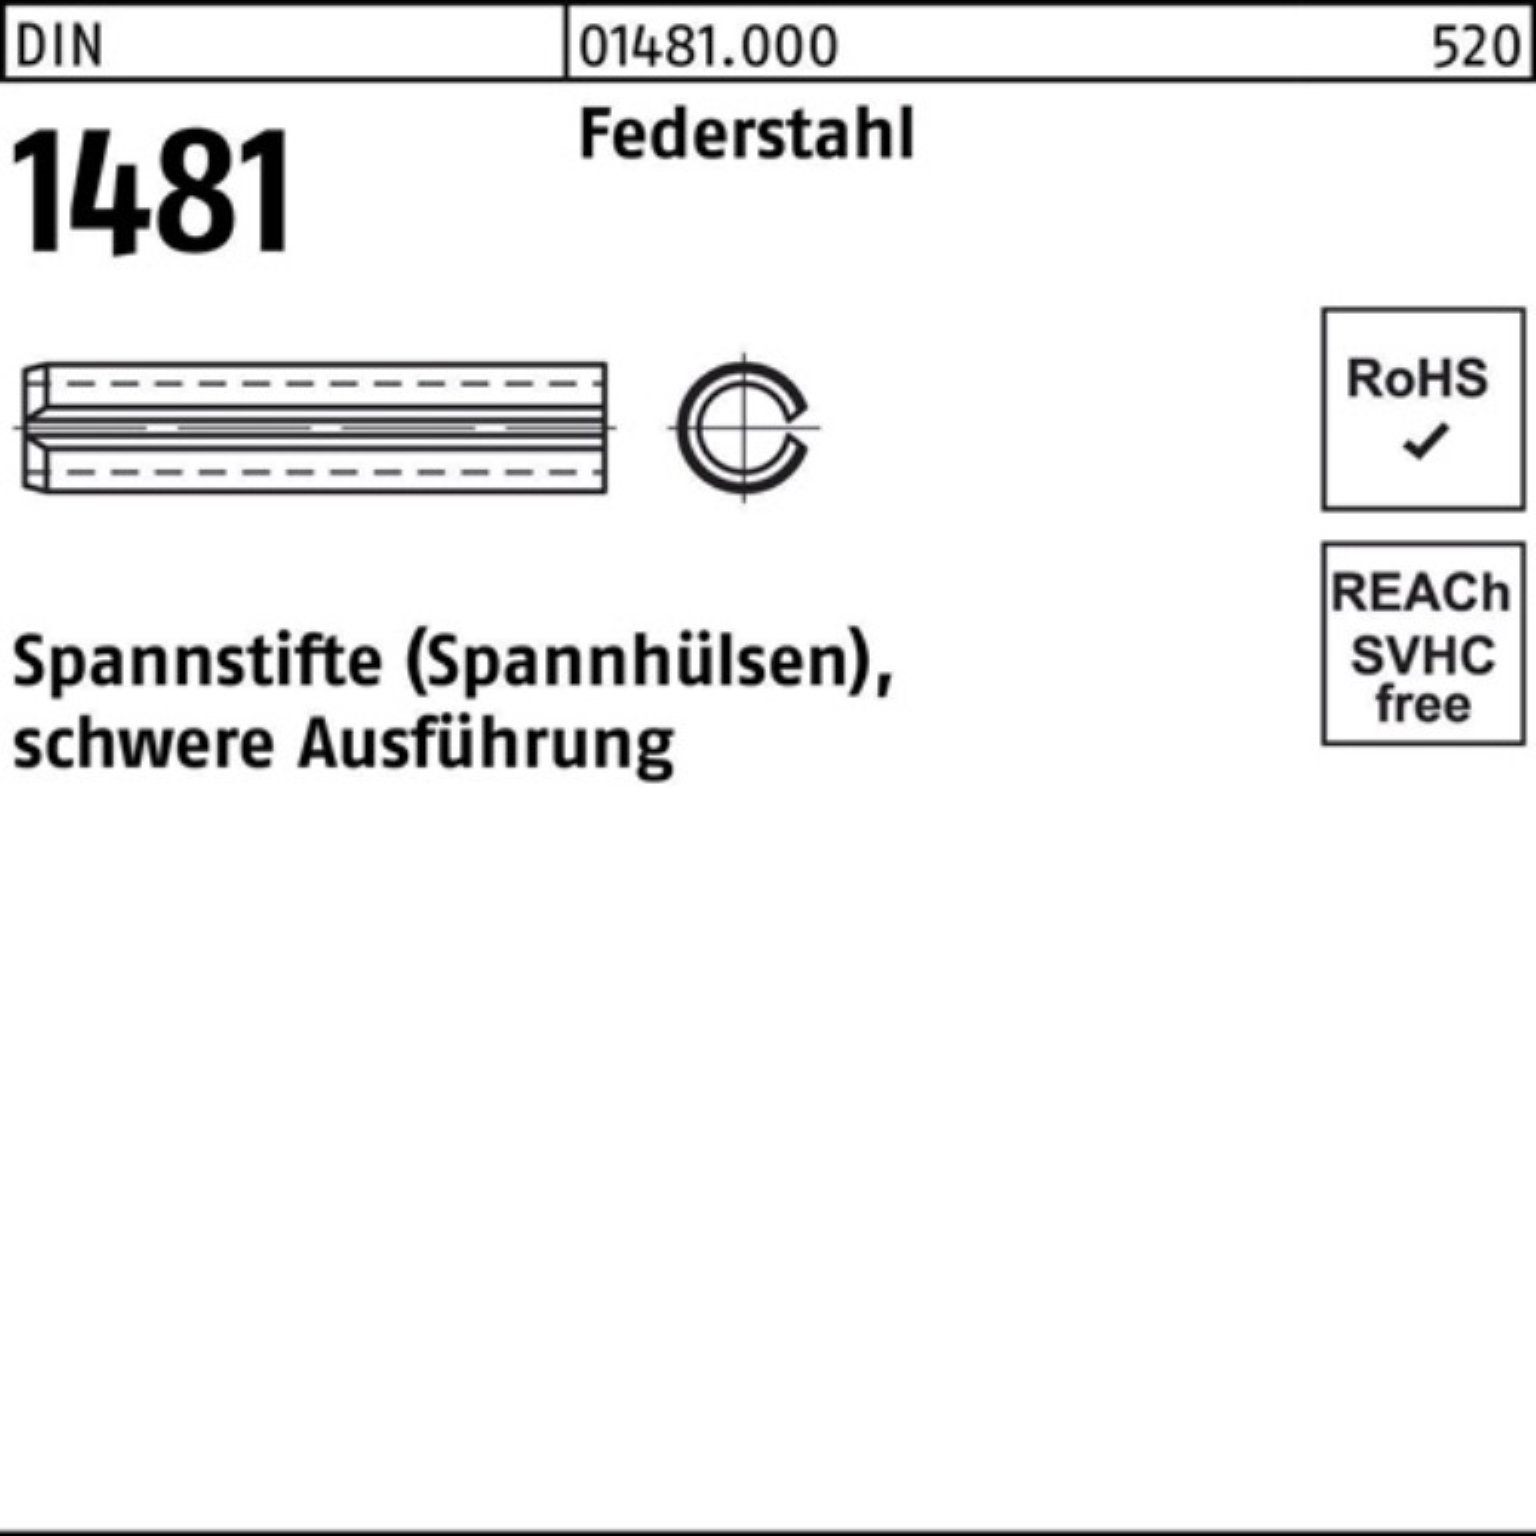 Reyher Spannstift 100er Pack Spannstift DIN 1481 10x 75 Federstahl schwere Ausführung 1